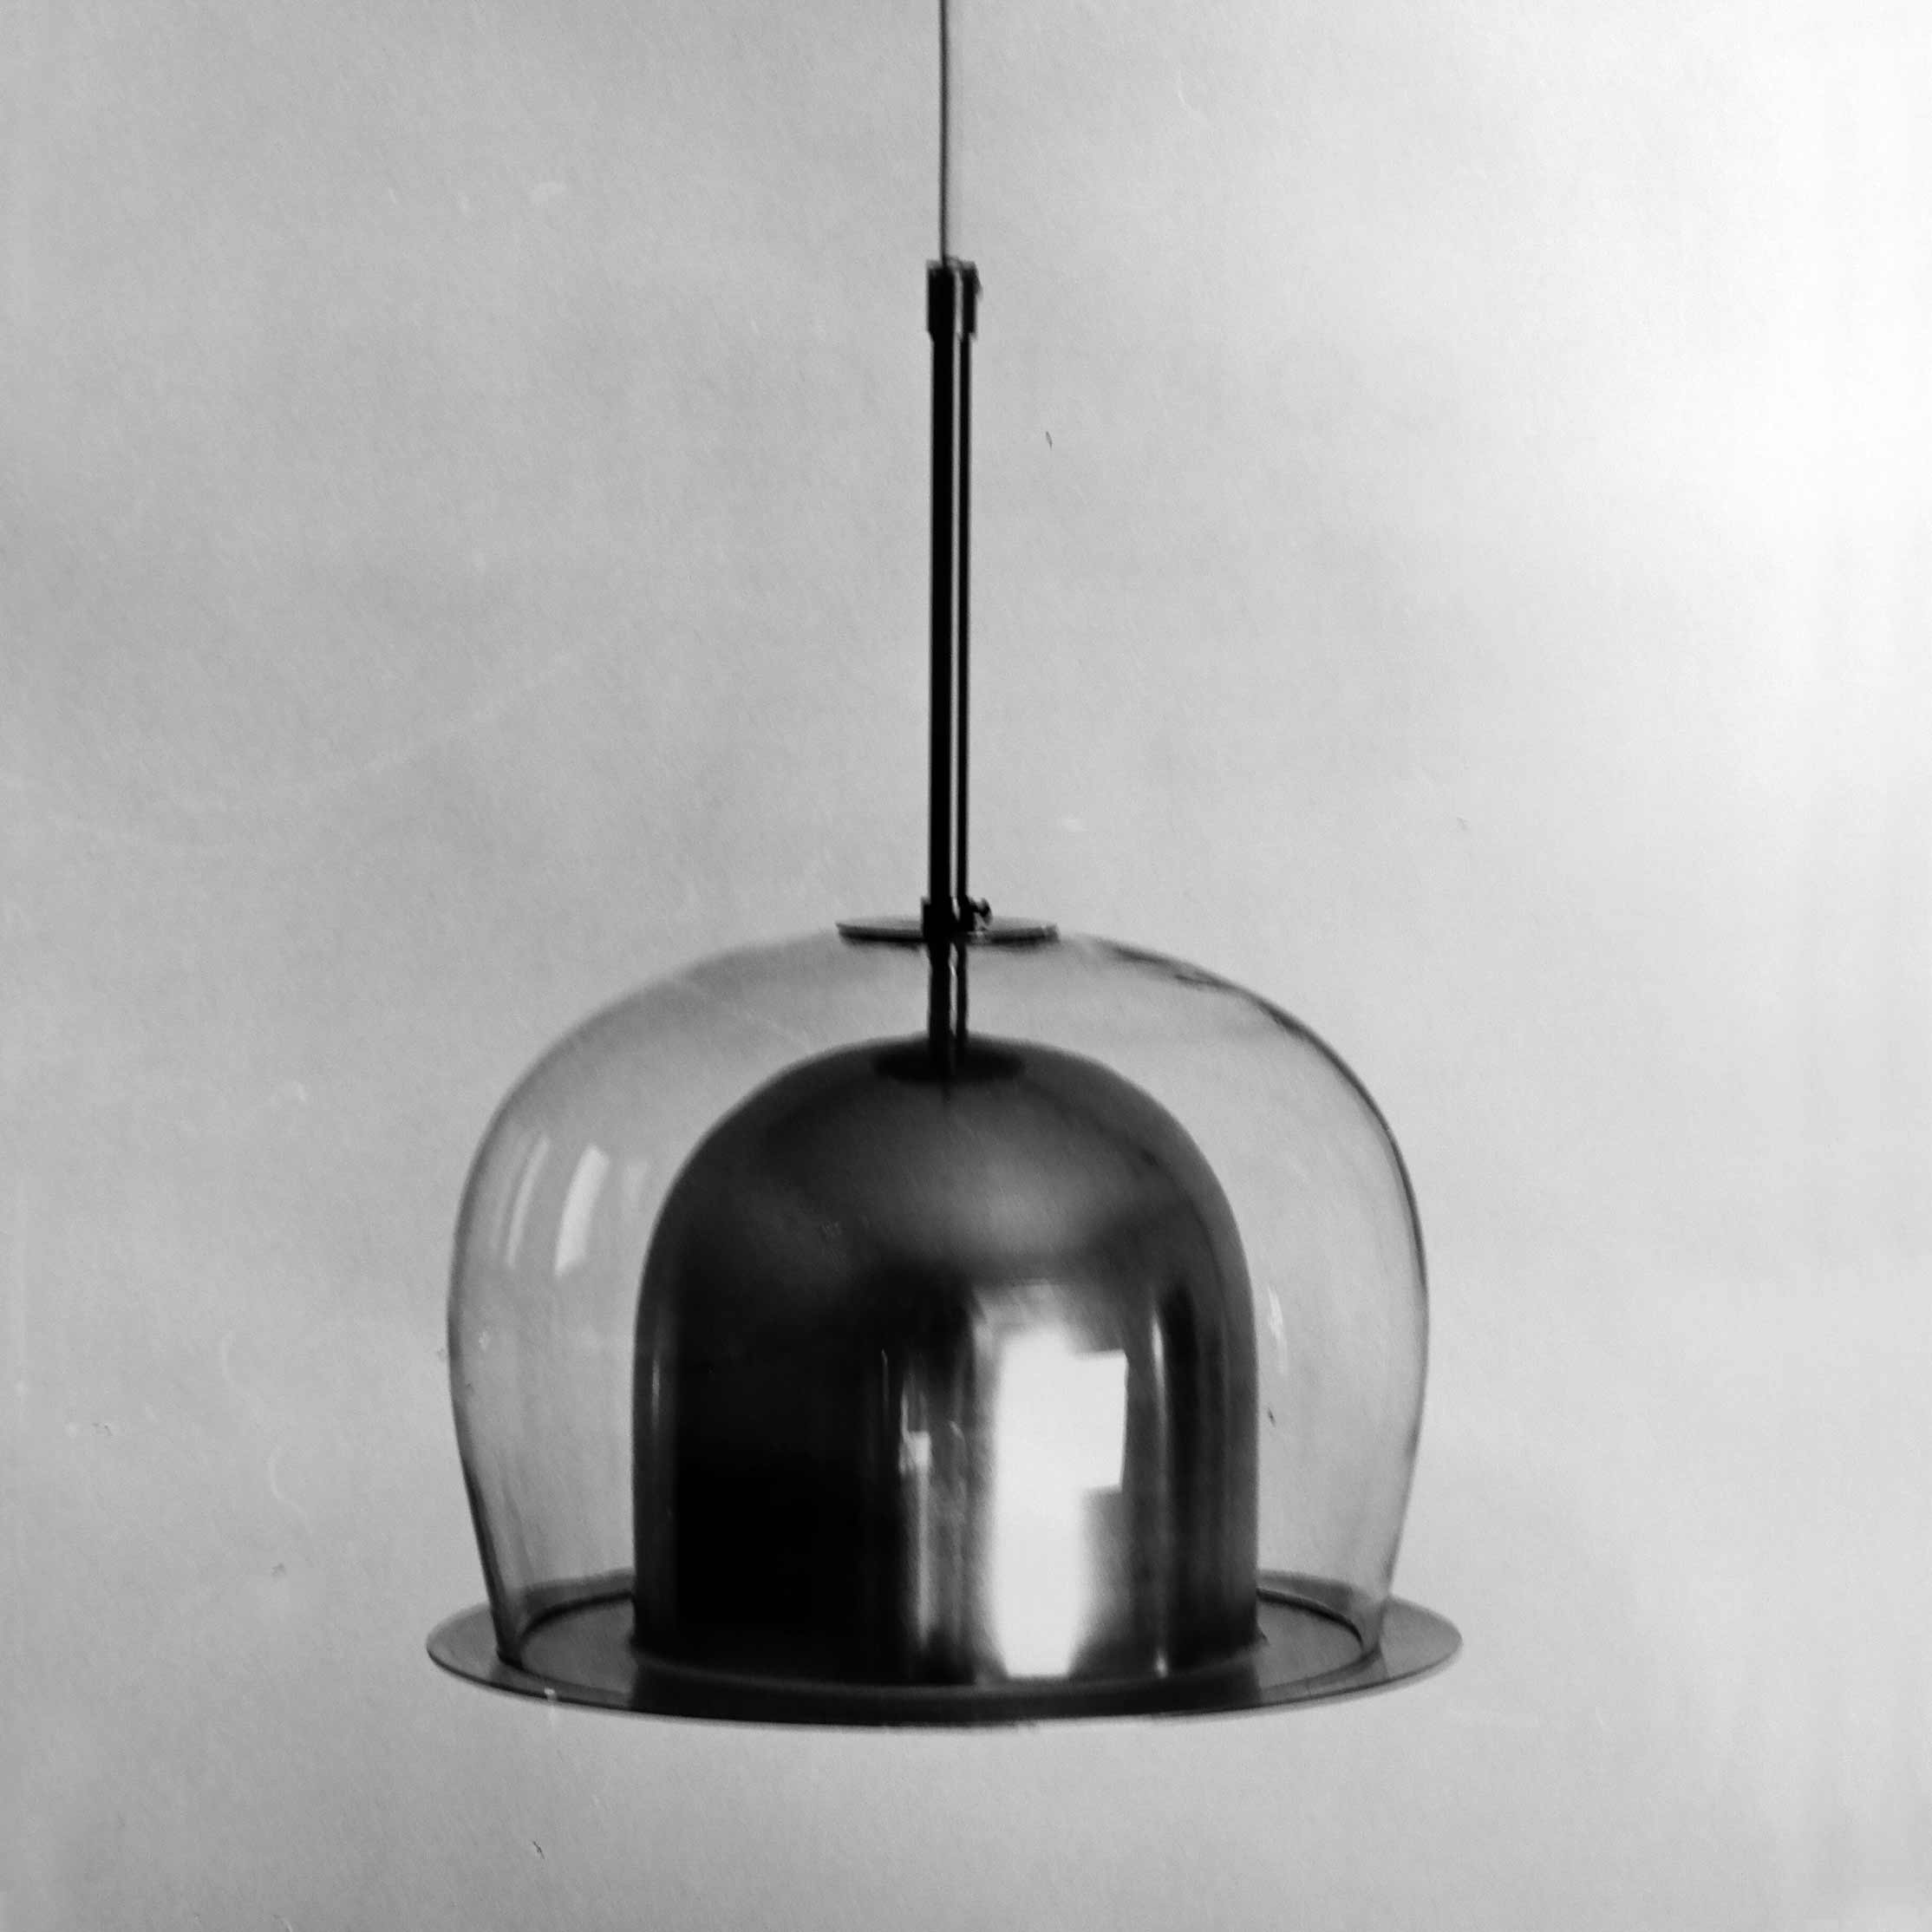 Prov. Pendlad takarmatur med reflektorskärm i plåt och utanpåliggande skärm i klarglas, blåst i Ängshyttan, Nybro 1967. Foto: John Selbing